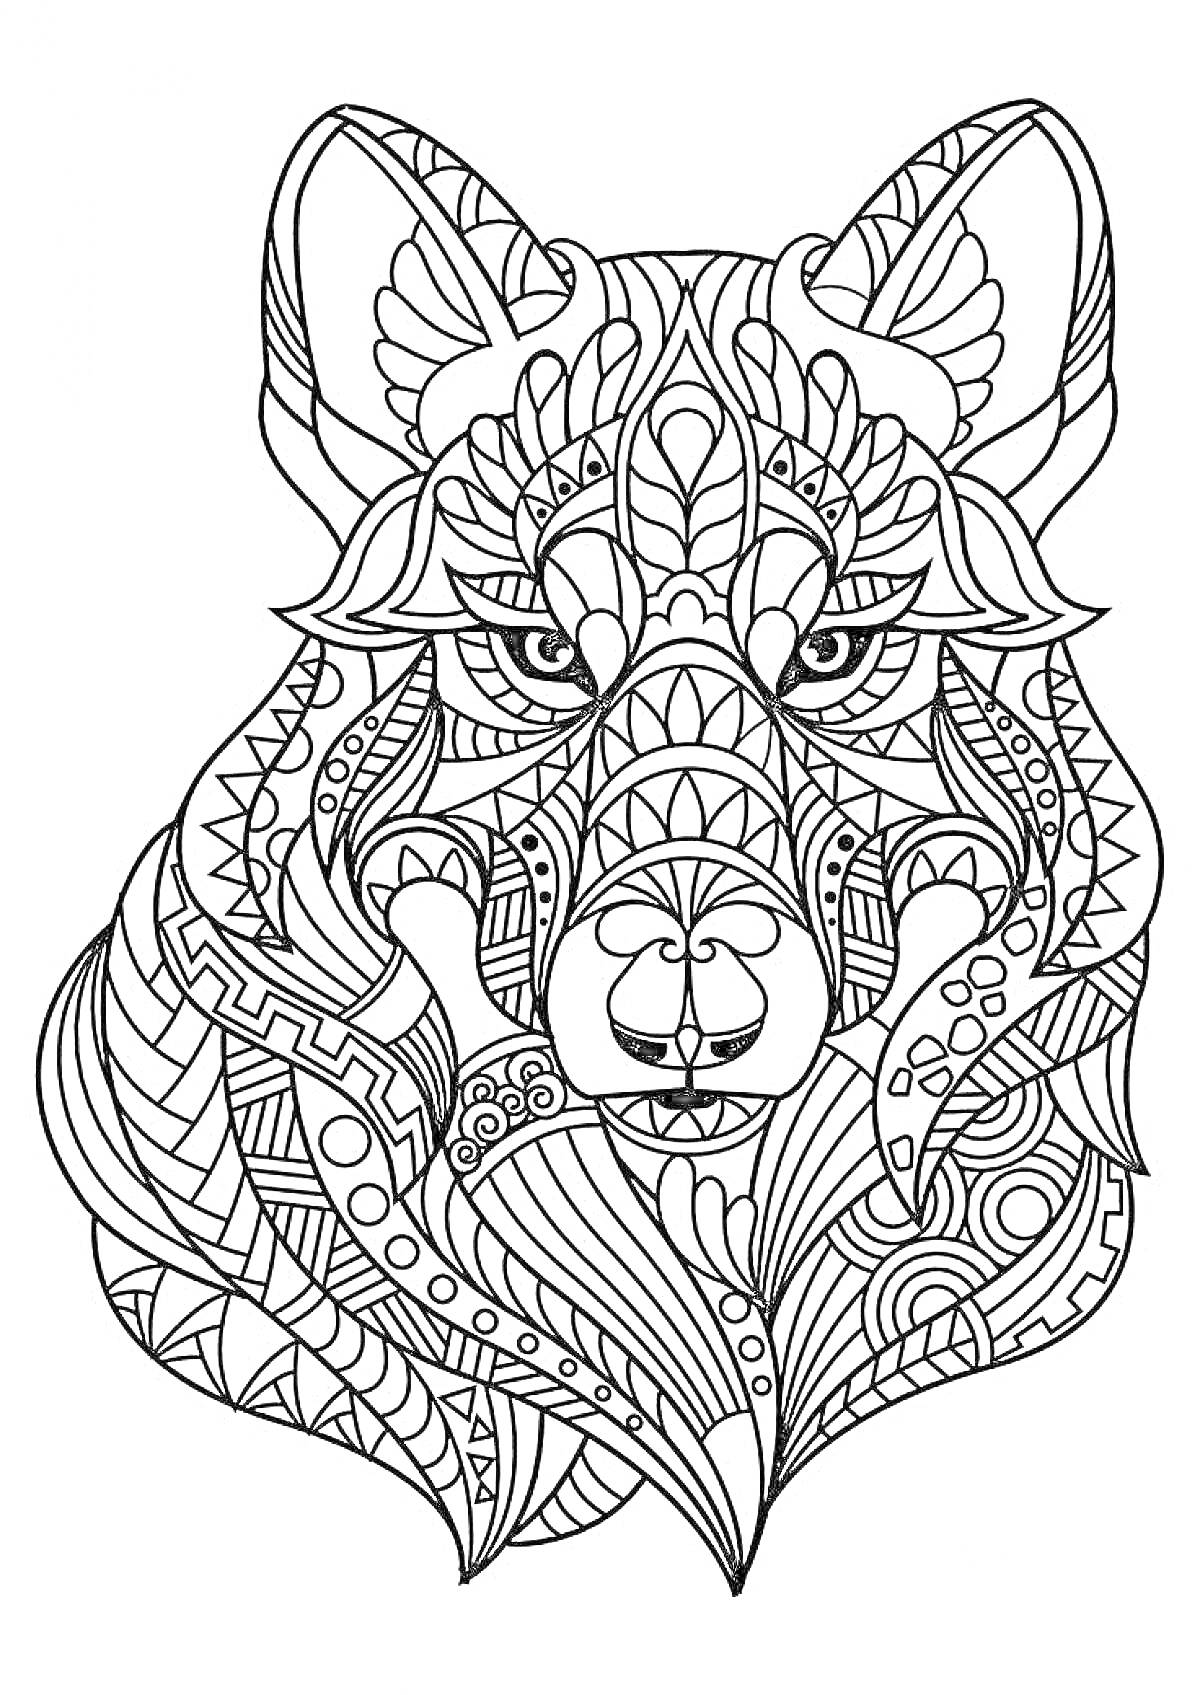 Раскраска Выторный силуэт головы волка с абстрактными узорами